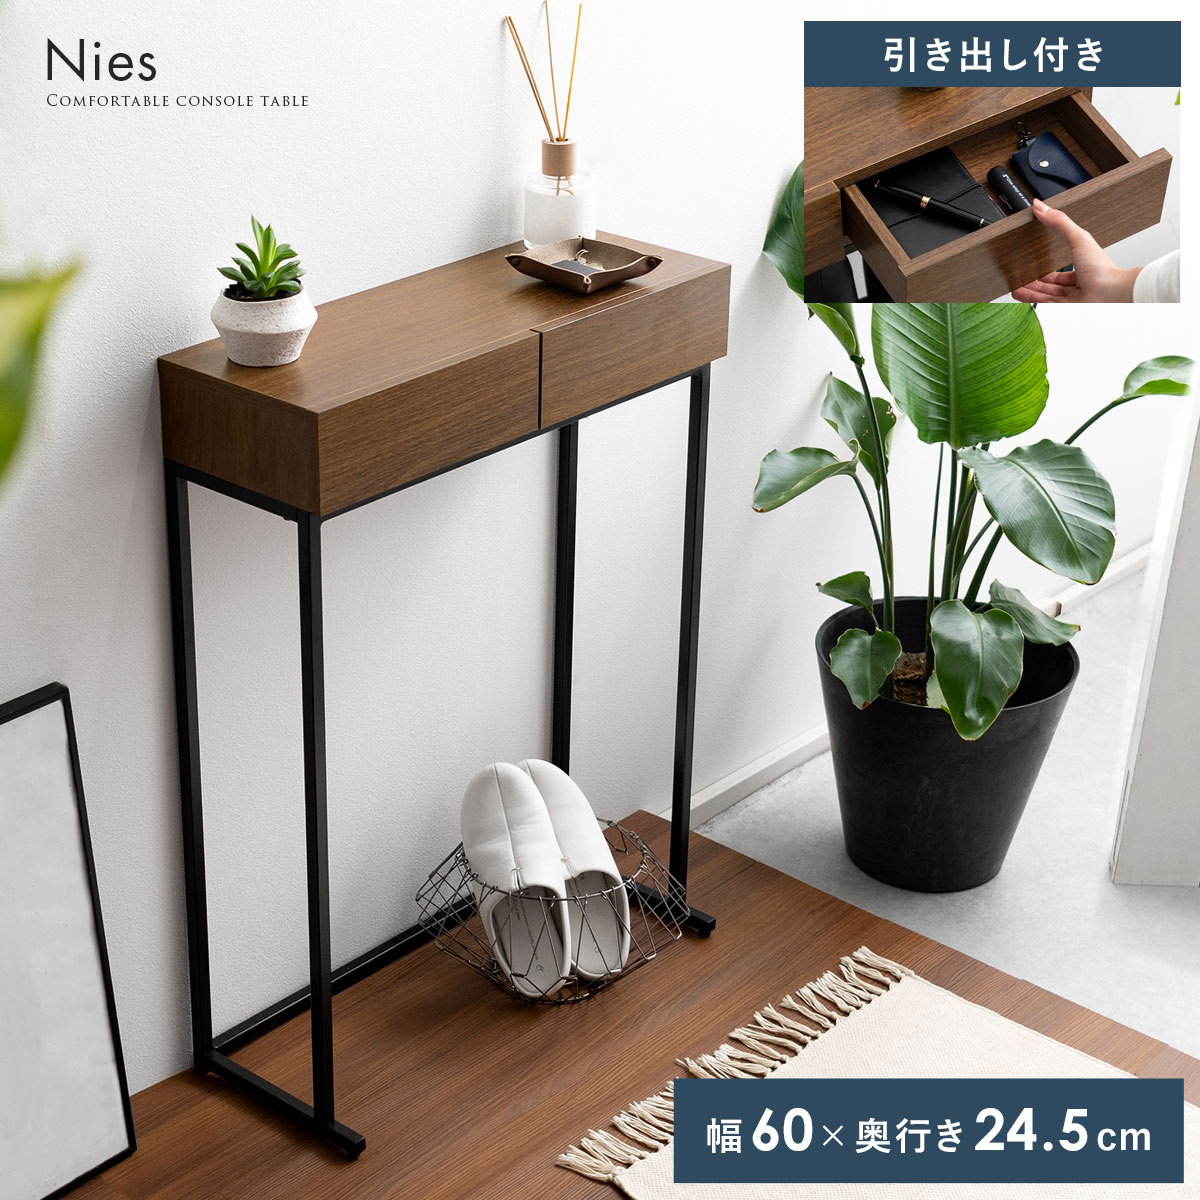 コンソールテーブル Nies(ニース) | 【公式】 家具通販のエア・リゾーム